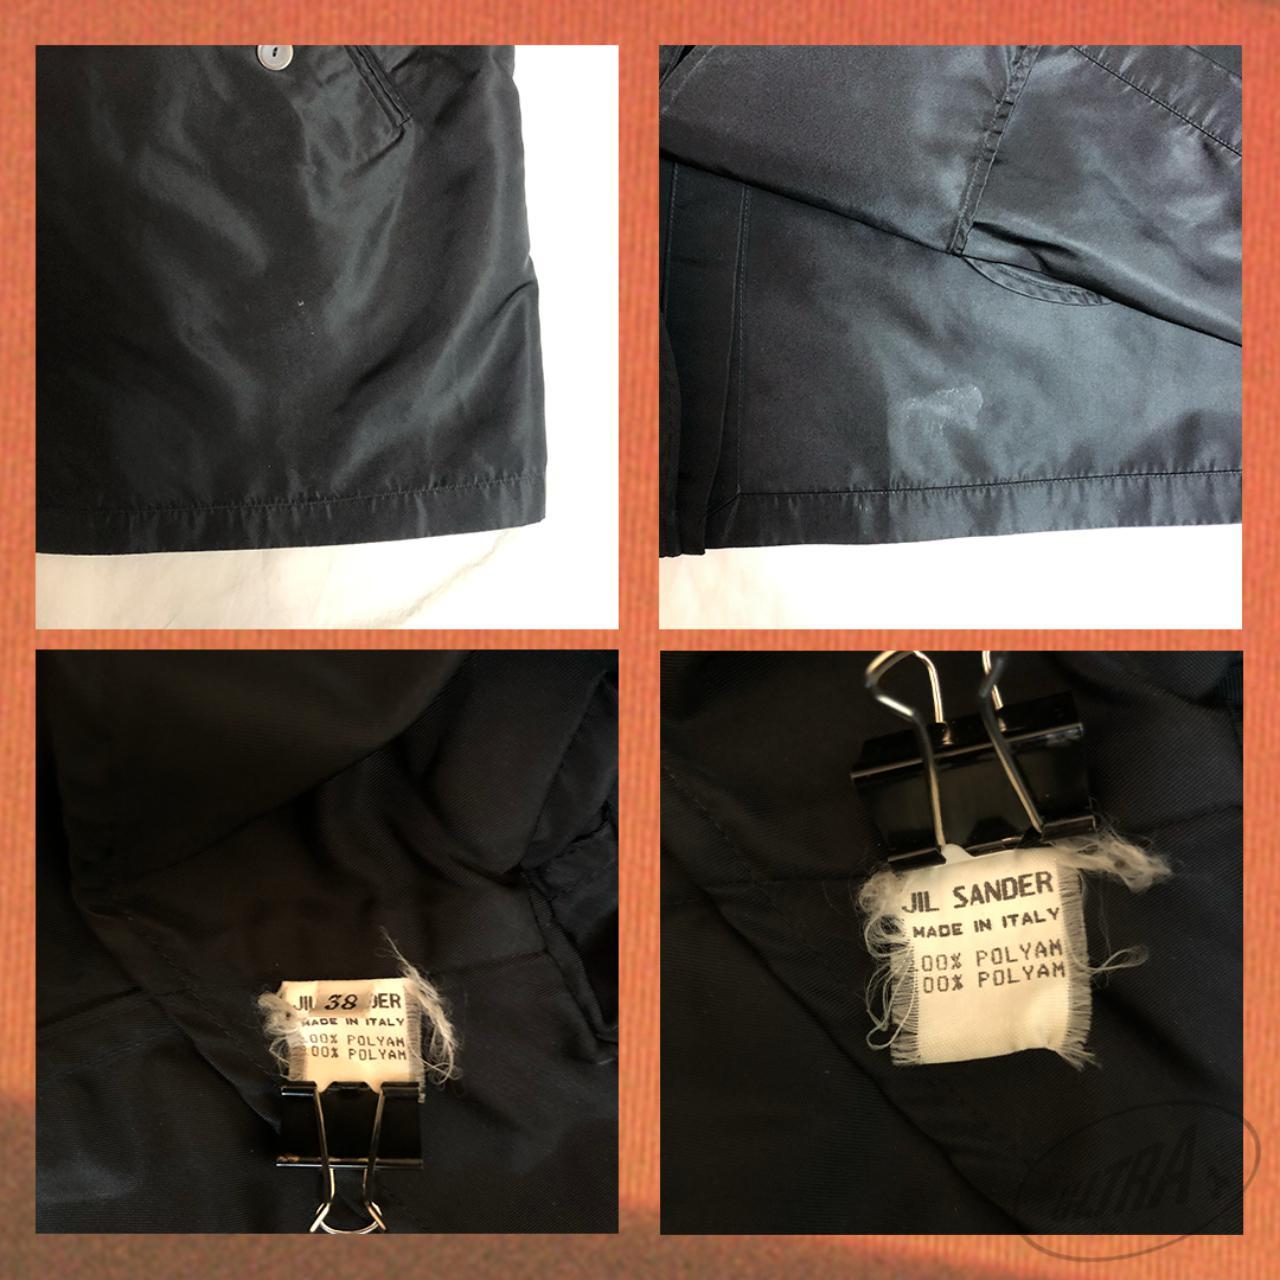 Product Image 4 - Vintage Jil sander jacket /